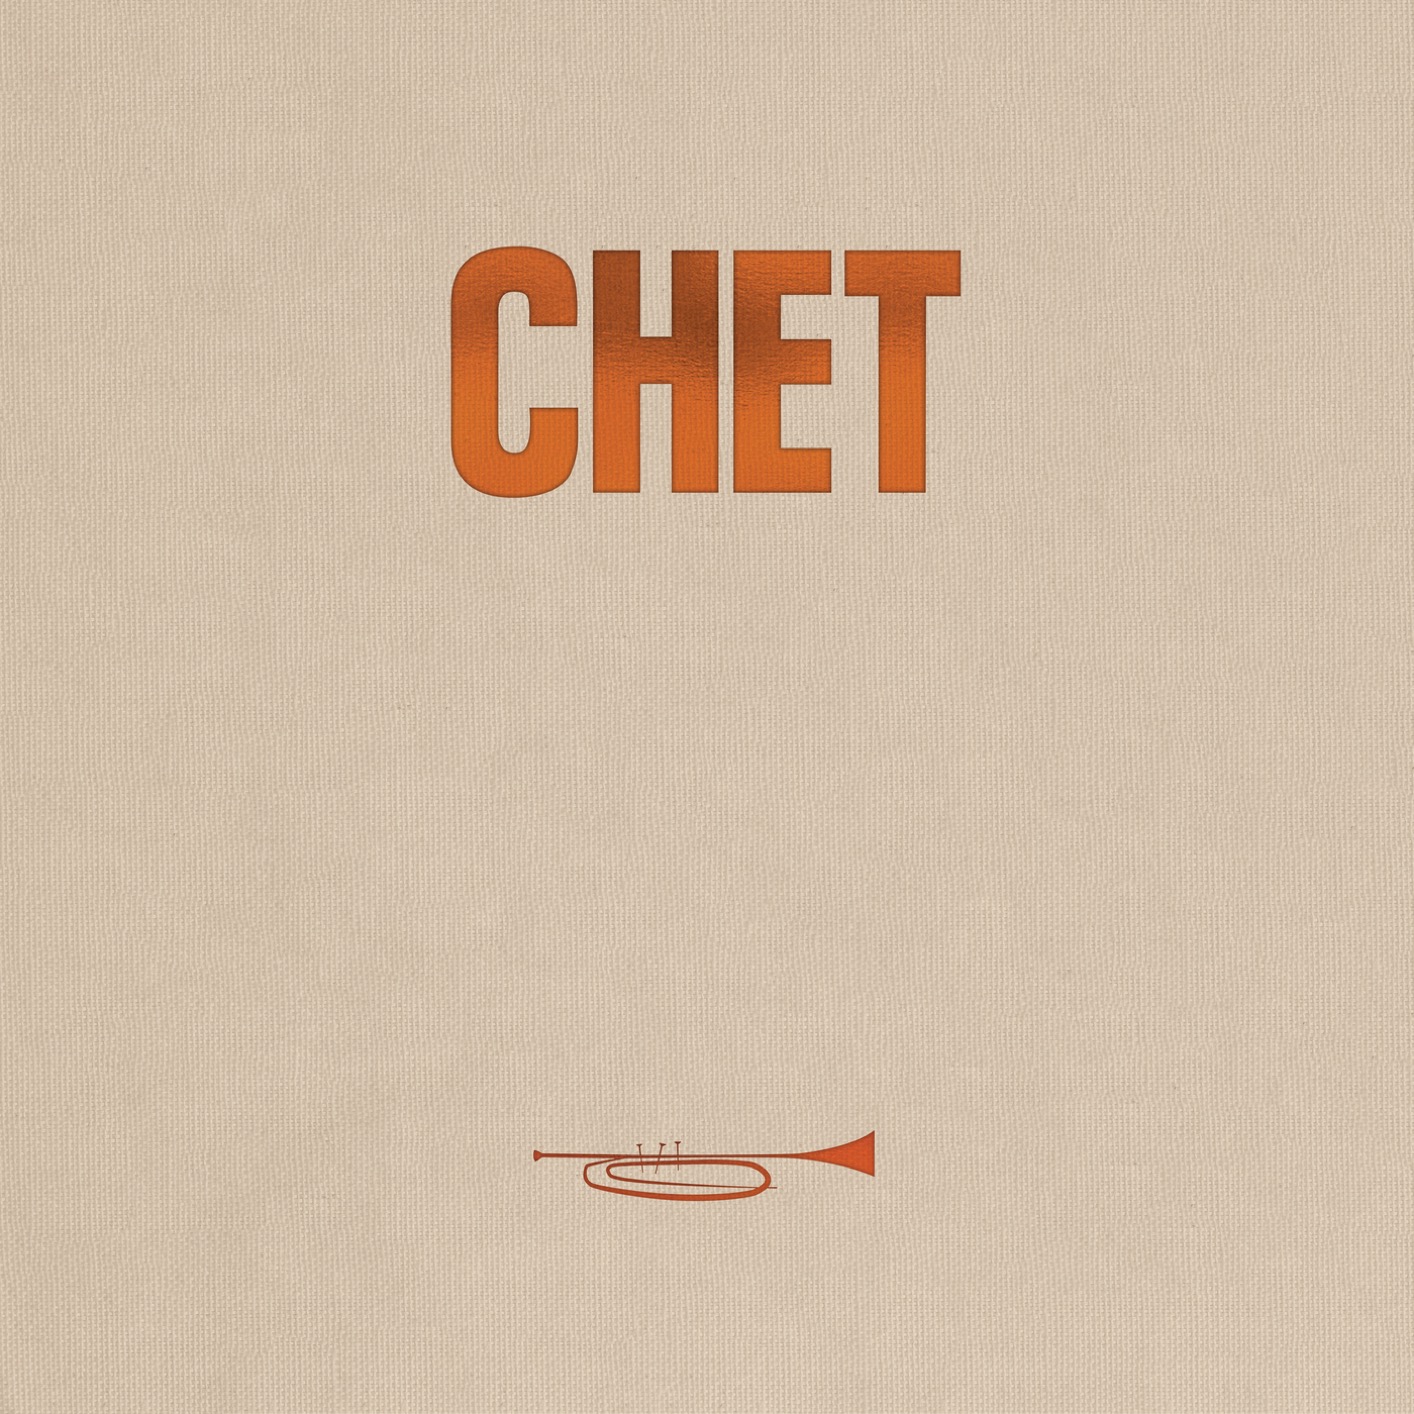 Chet Baker - The Legendary Riverside Albums (Remastered) (2019) [FLAC FLAC 24bit/96kHz]